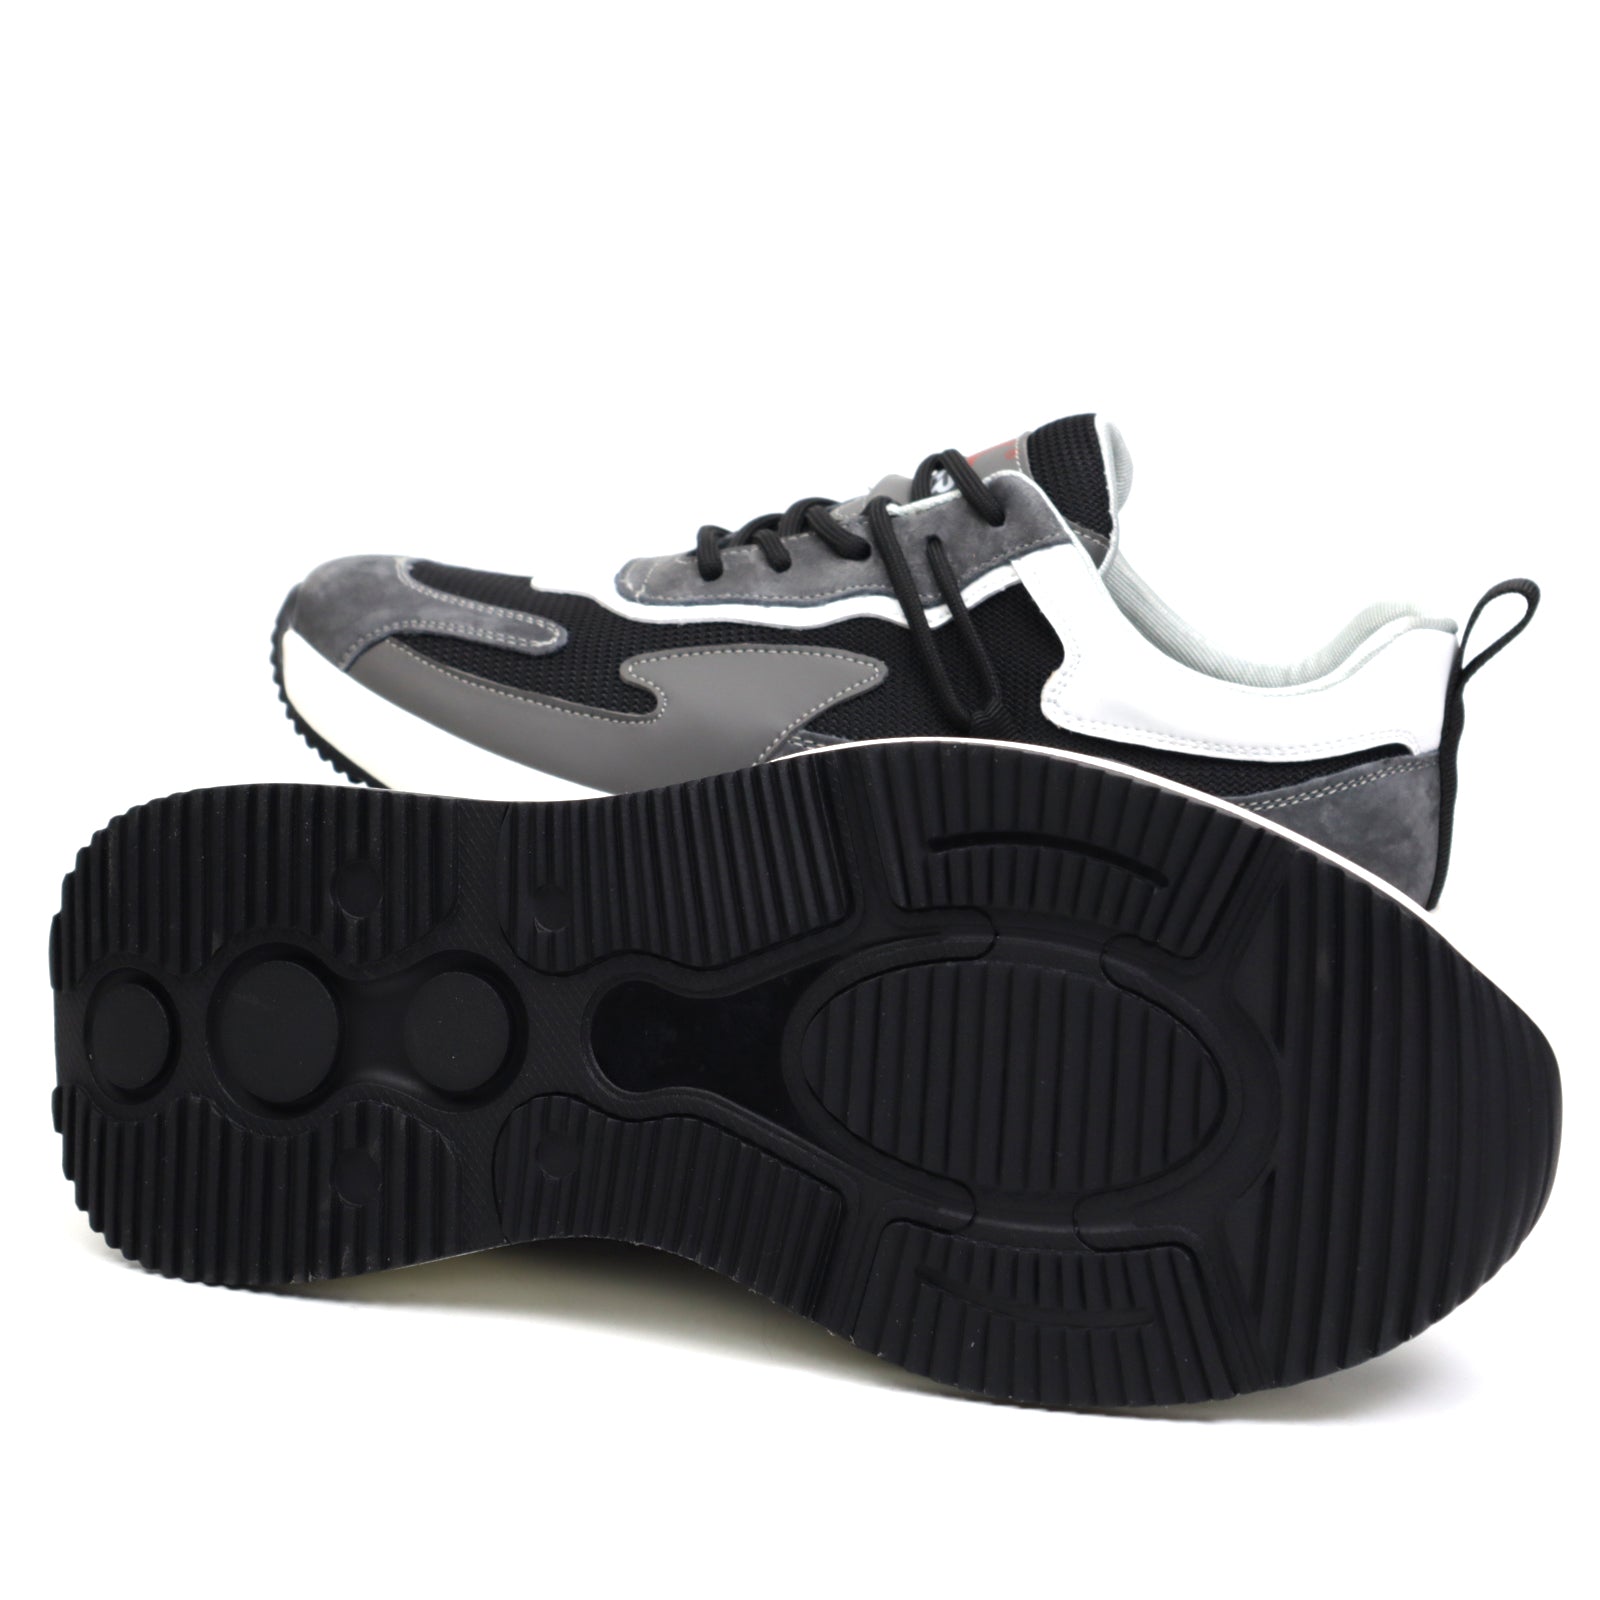 Otter Pantofi barbati sport X5X600020A L2 Z negru IB2352-NG